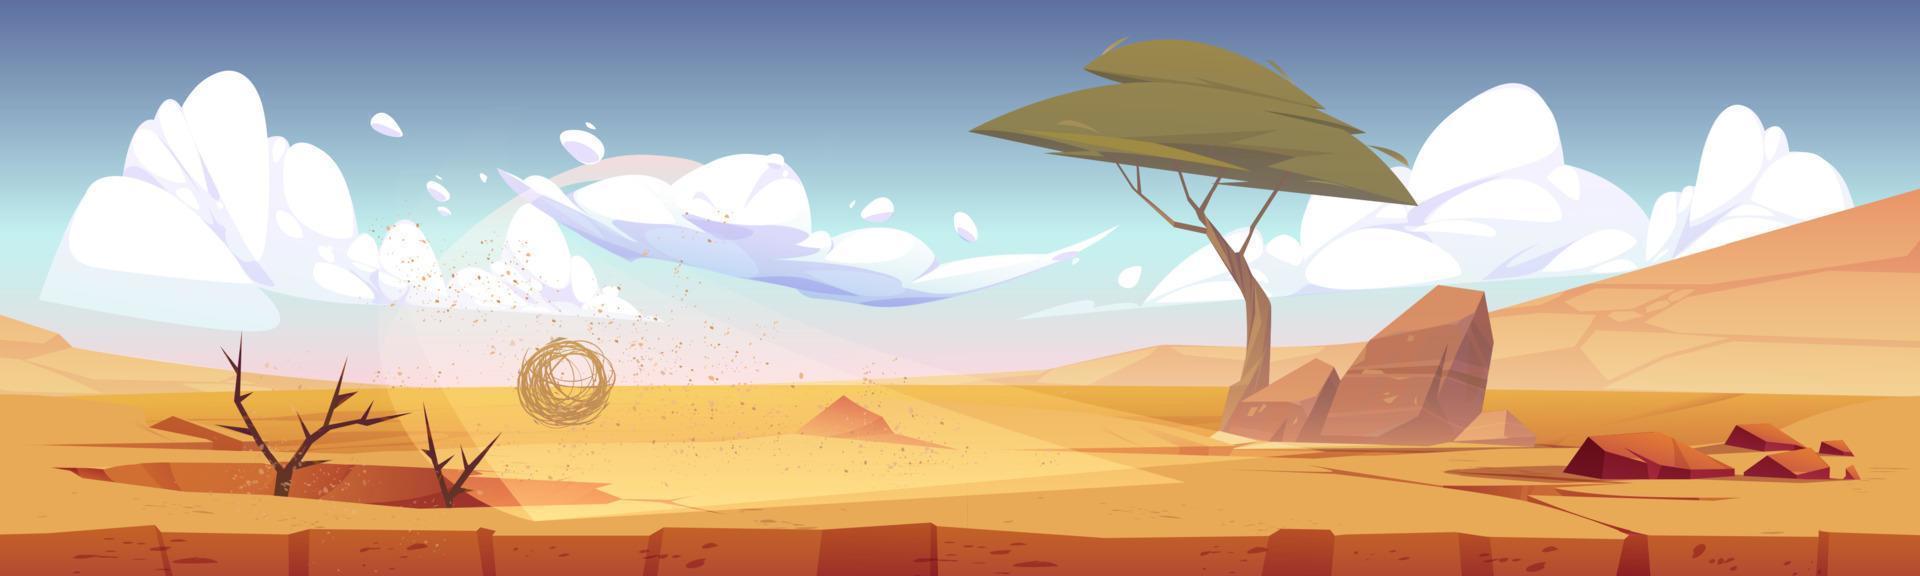 Afrikaanse woestijn landschap, achtergrond voor spel vector